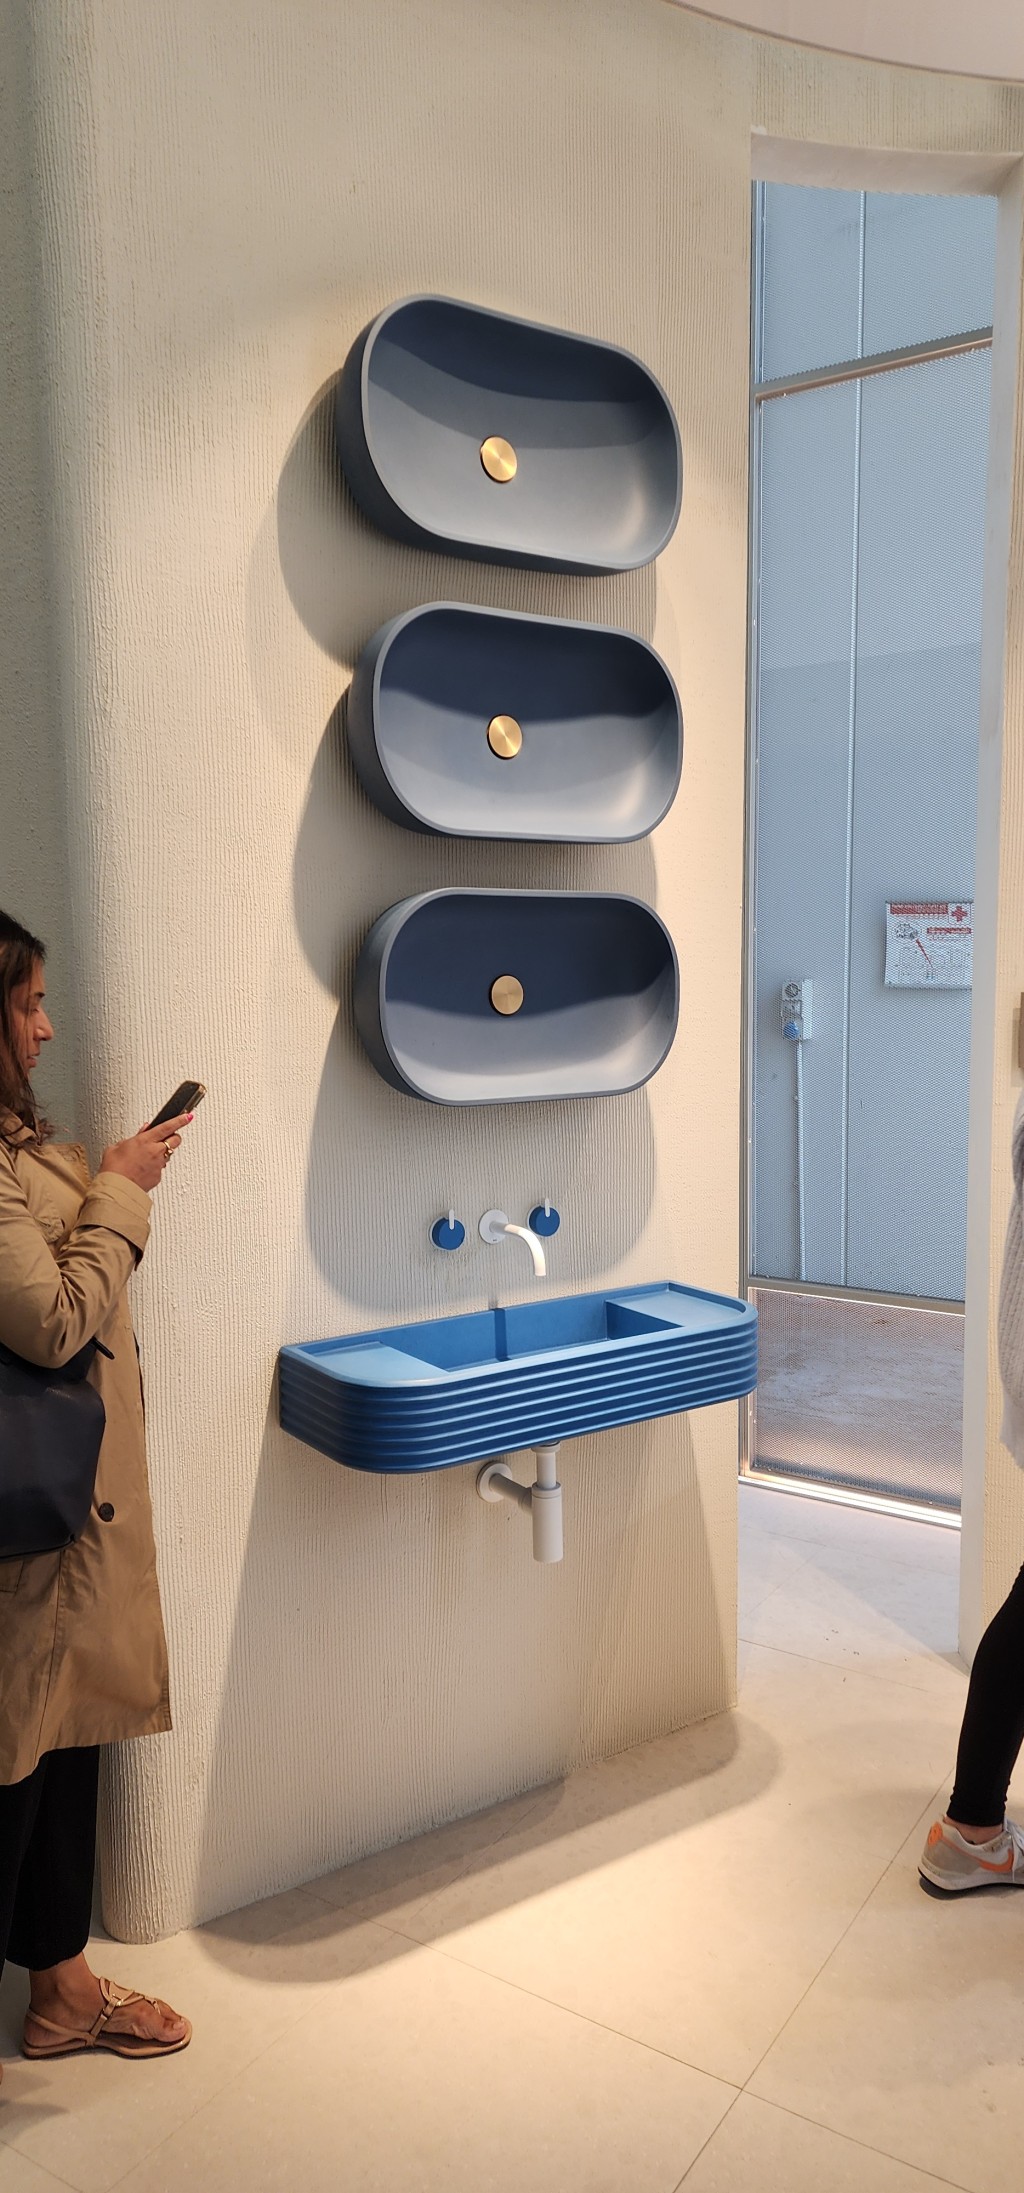 Blue sinks at Salone Internazionale del Mobile di Milano